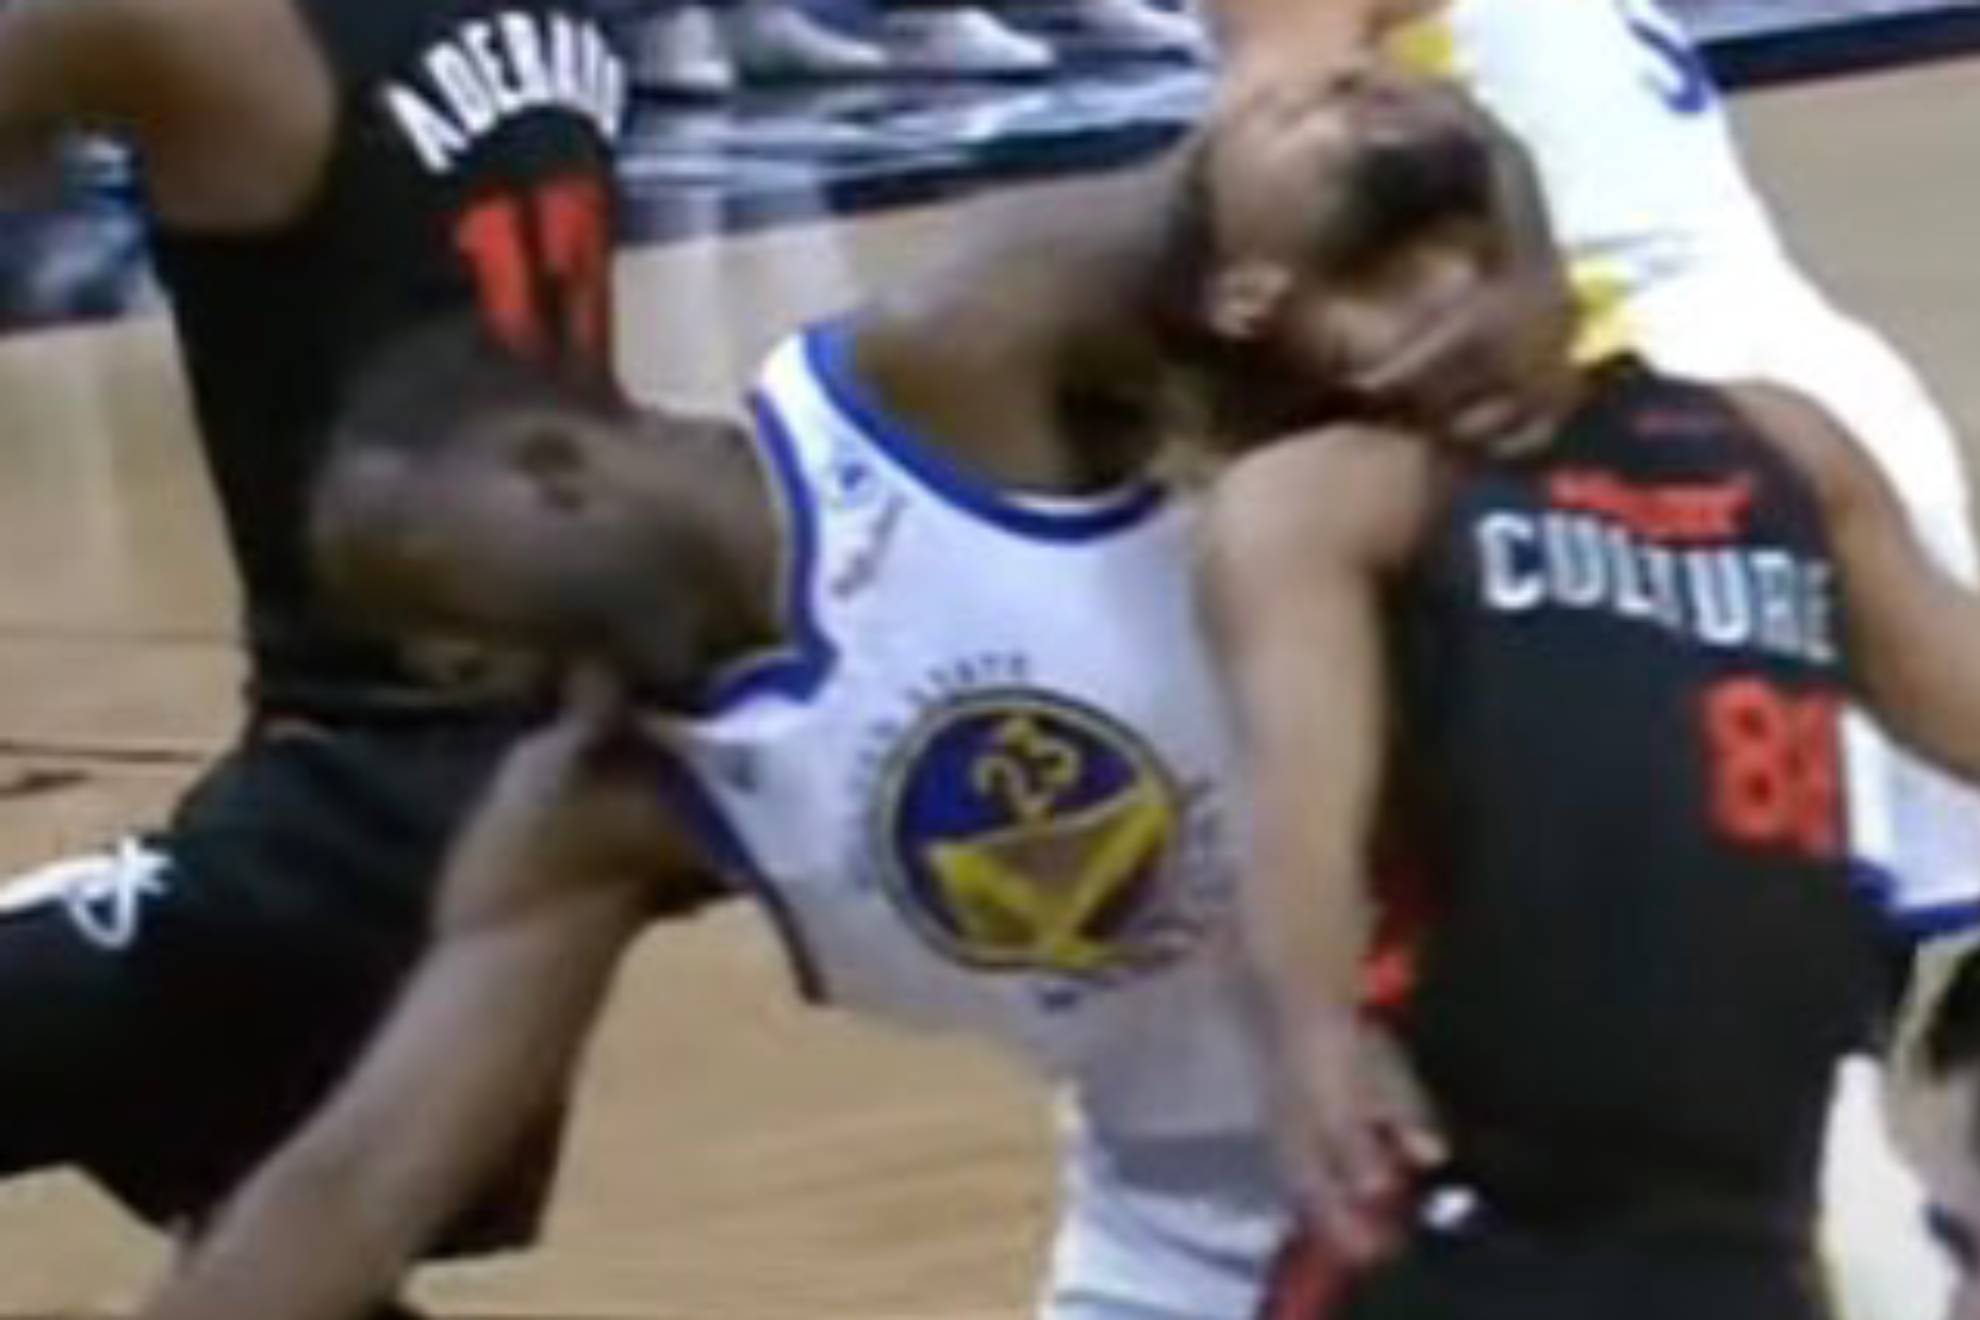 El jugador m�s sucio de la NBA recae en su juego violento: Draymond Green sale casi impune de su �ltima tropelia